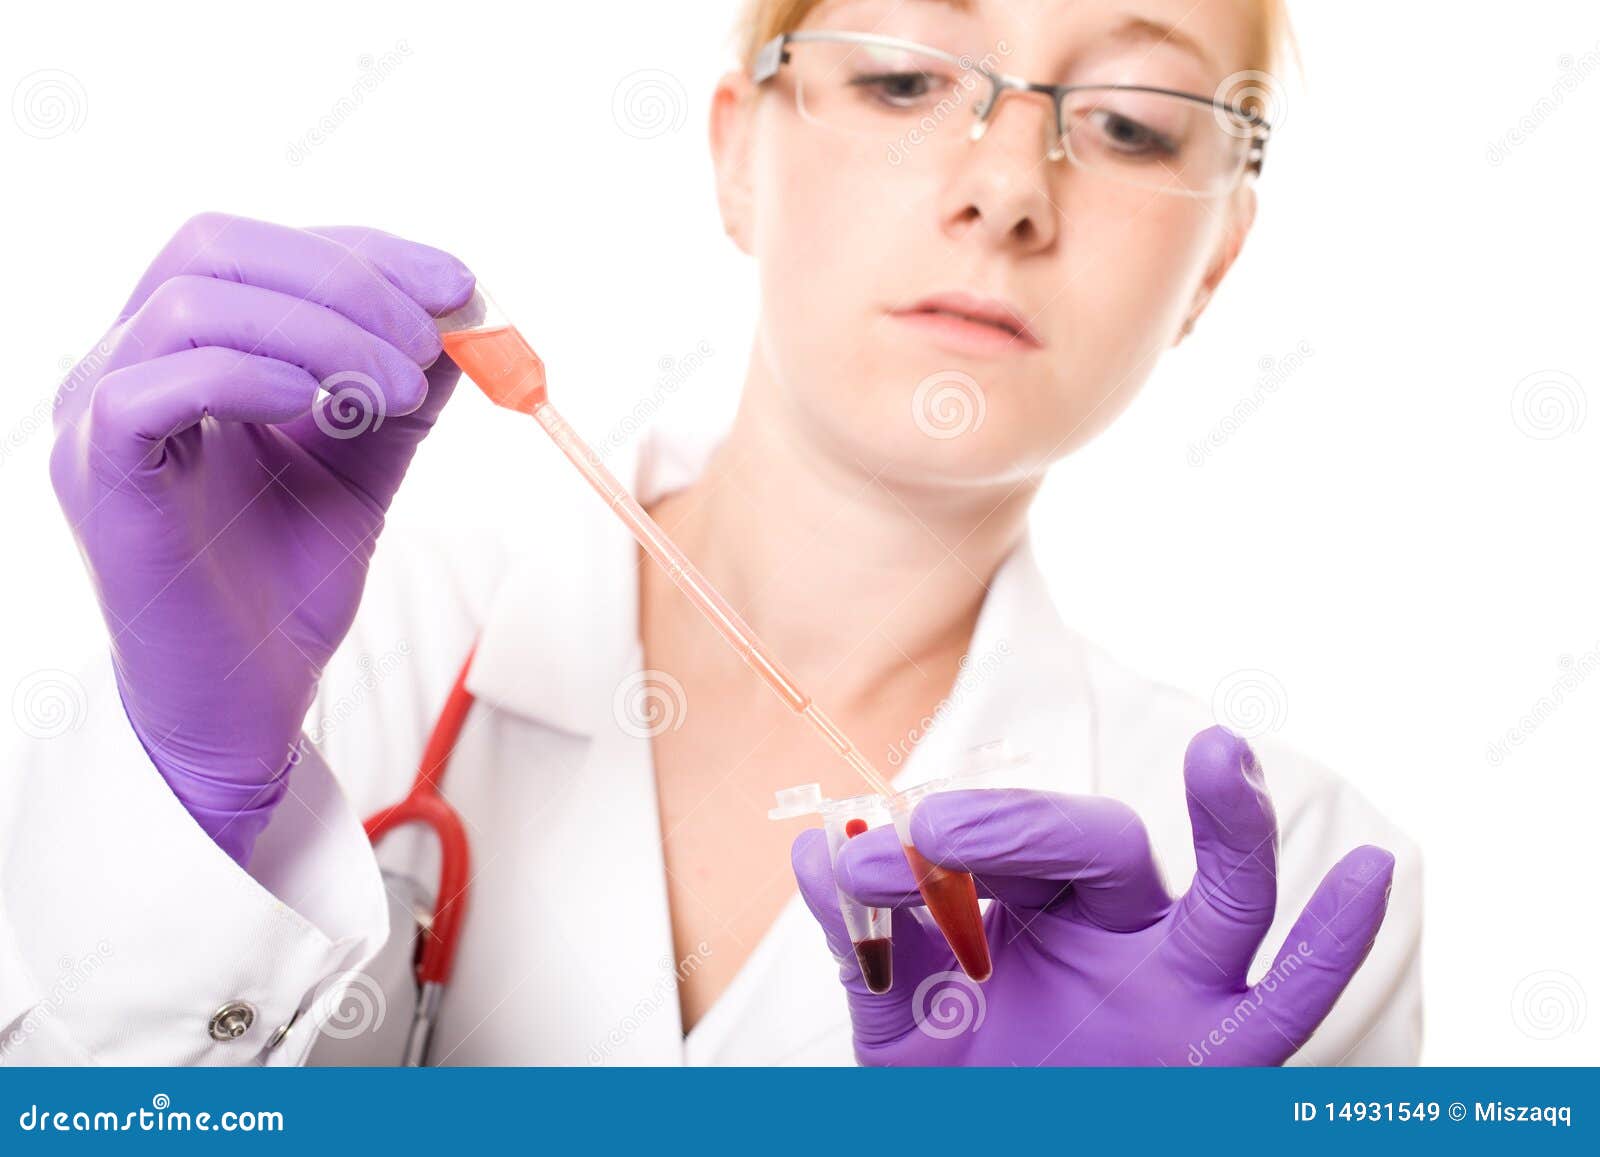 Врач определяющий заболевания. Лаборант берет кровь.